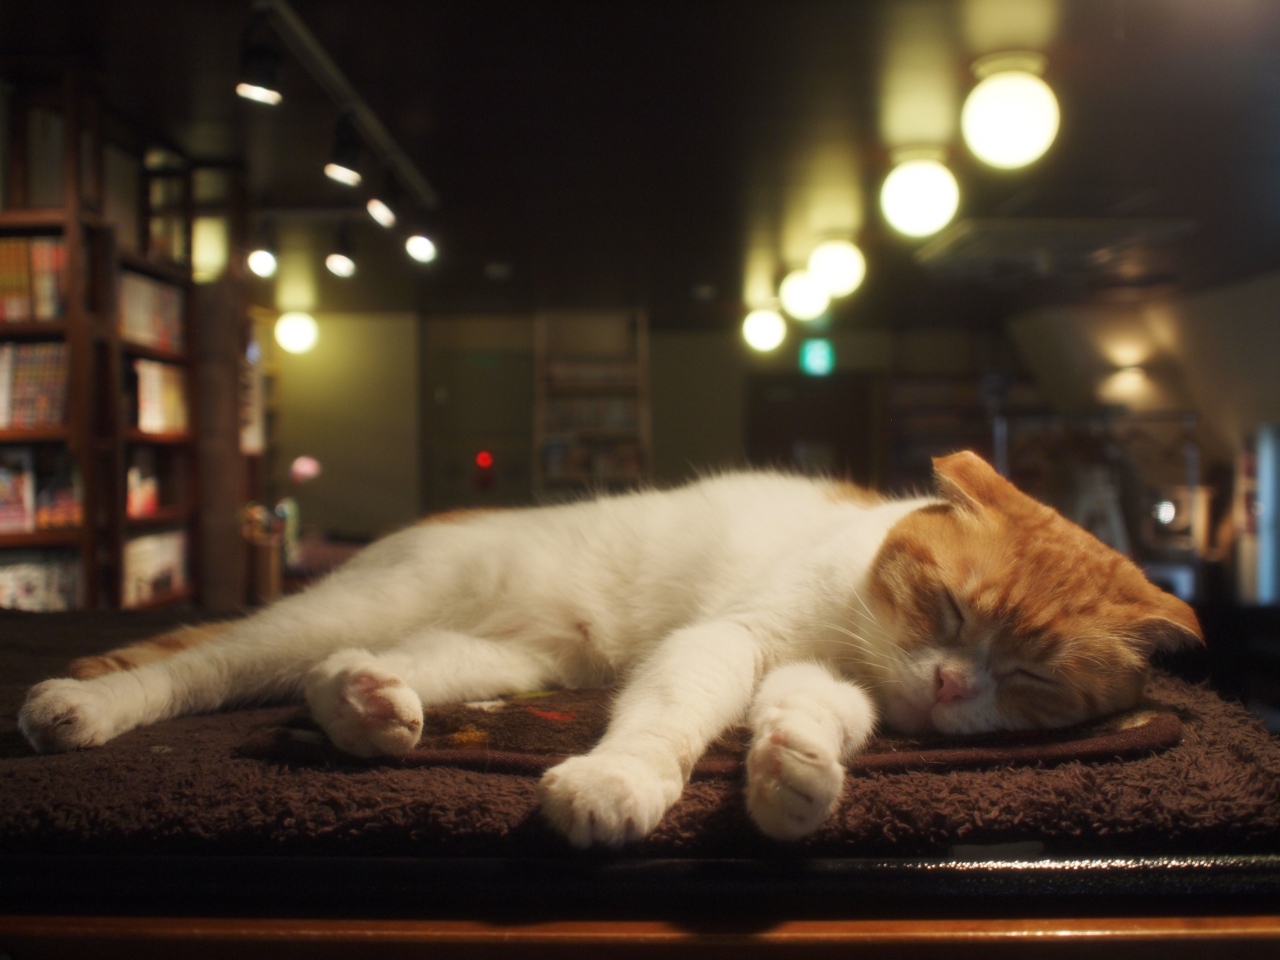 猫巡礼の旅 ー池袋 猫の居る休憩所299篇ー 池袋 東京 の旅行記 ブログ By Middx さん フォートラベル